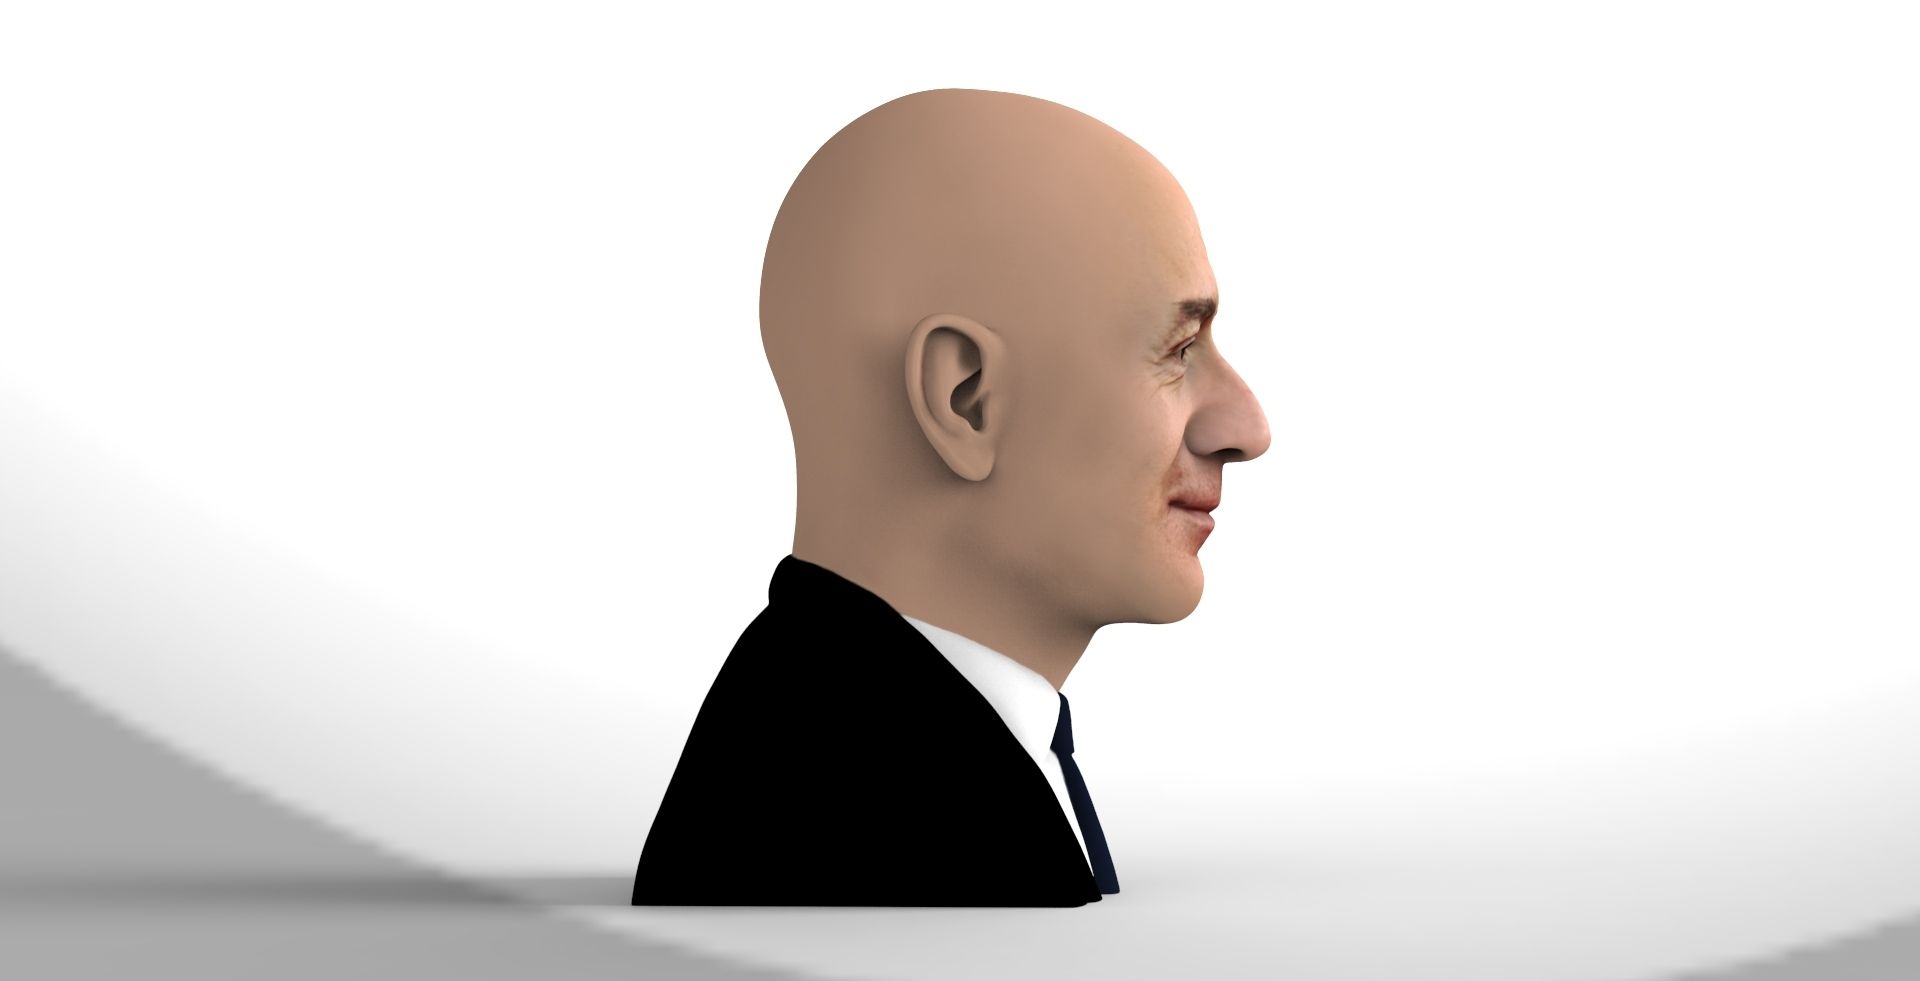 untitled.1103.jpg Descargar archivo El busto de Jeff Bezos está listo para la impresión en 3D a todo color • Diseño para imprimir en 3D, PrintedReality